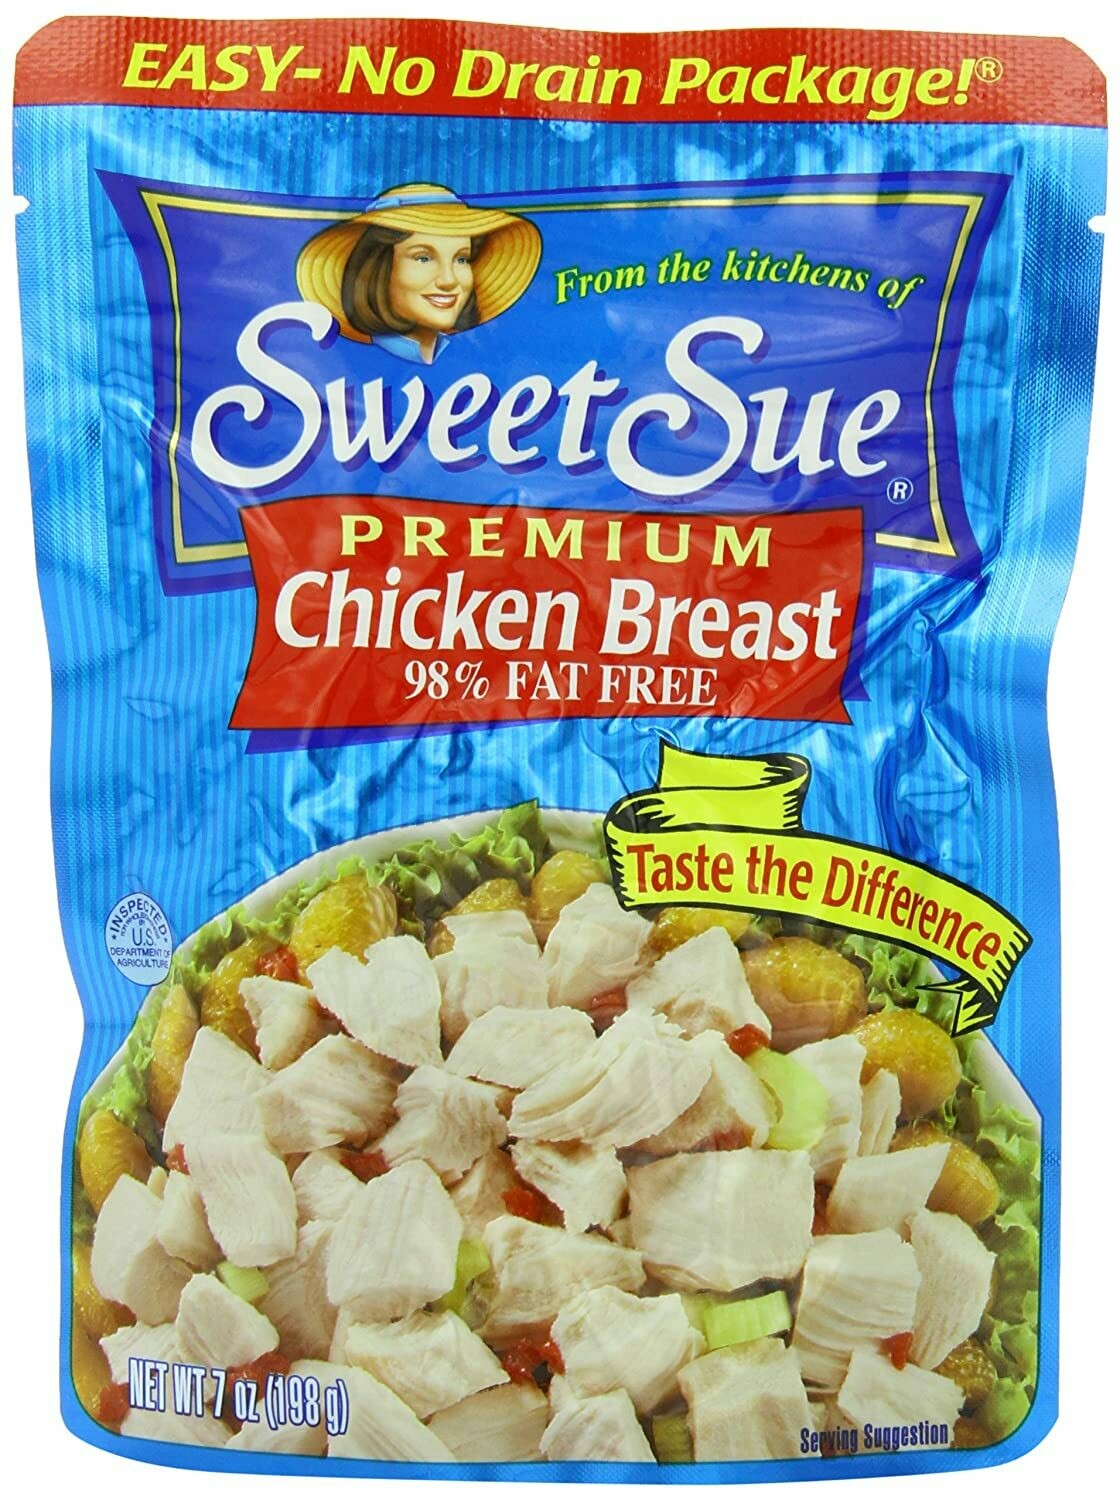 Sweet Sue Premium Chicken Breast